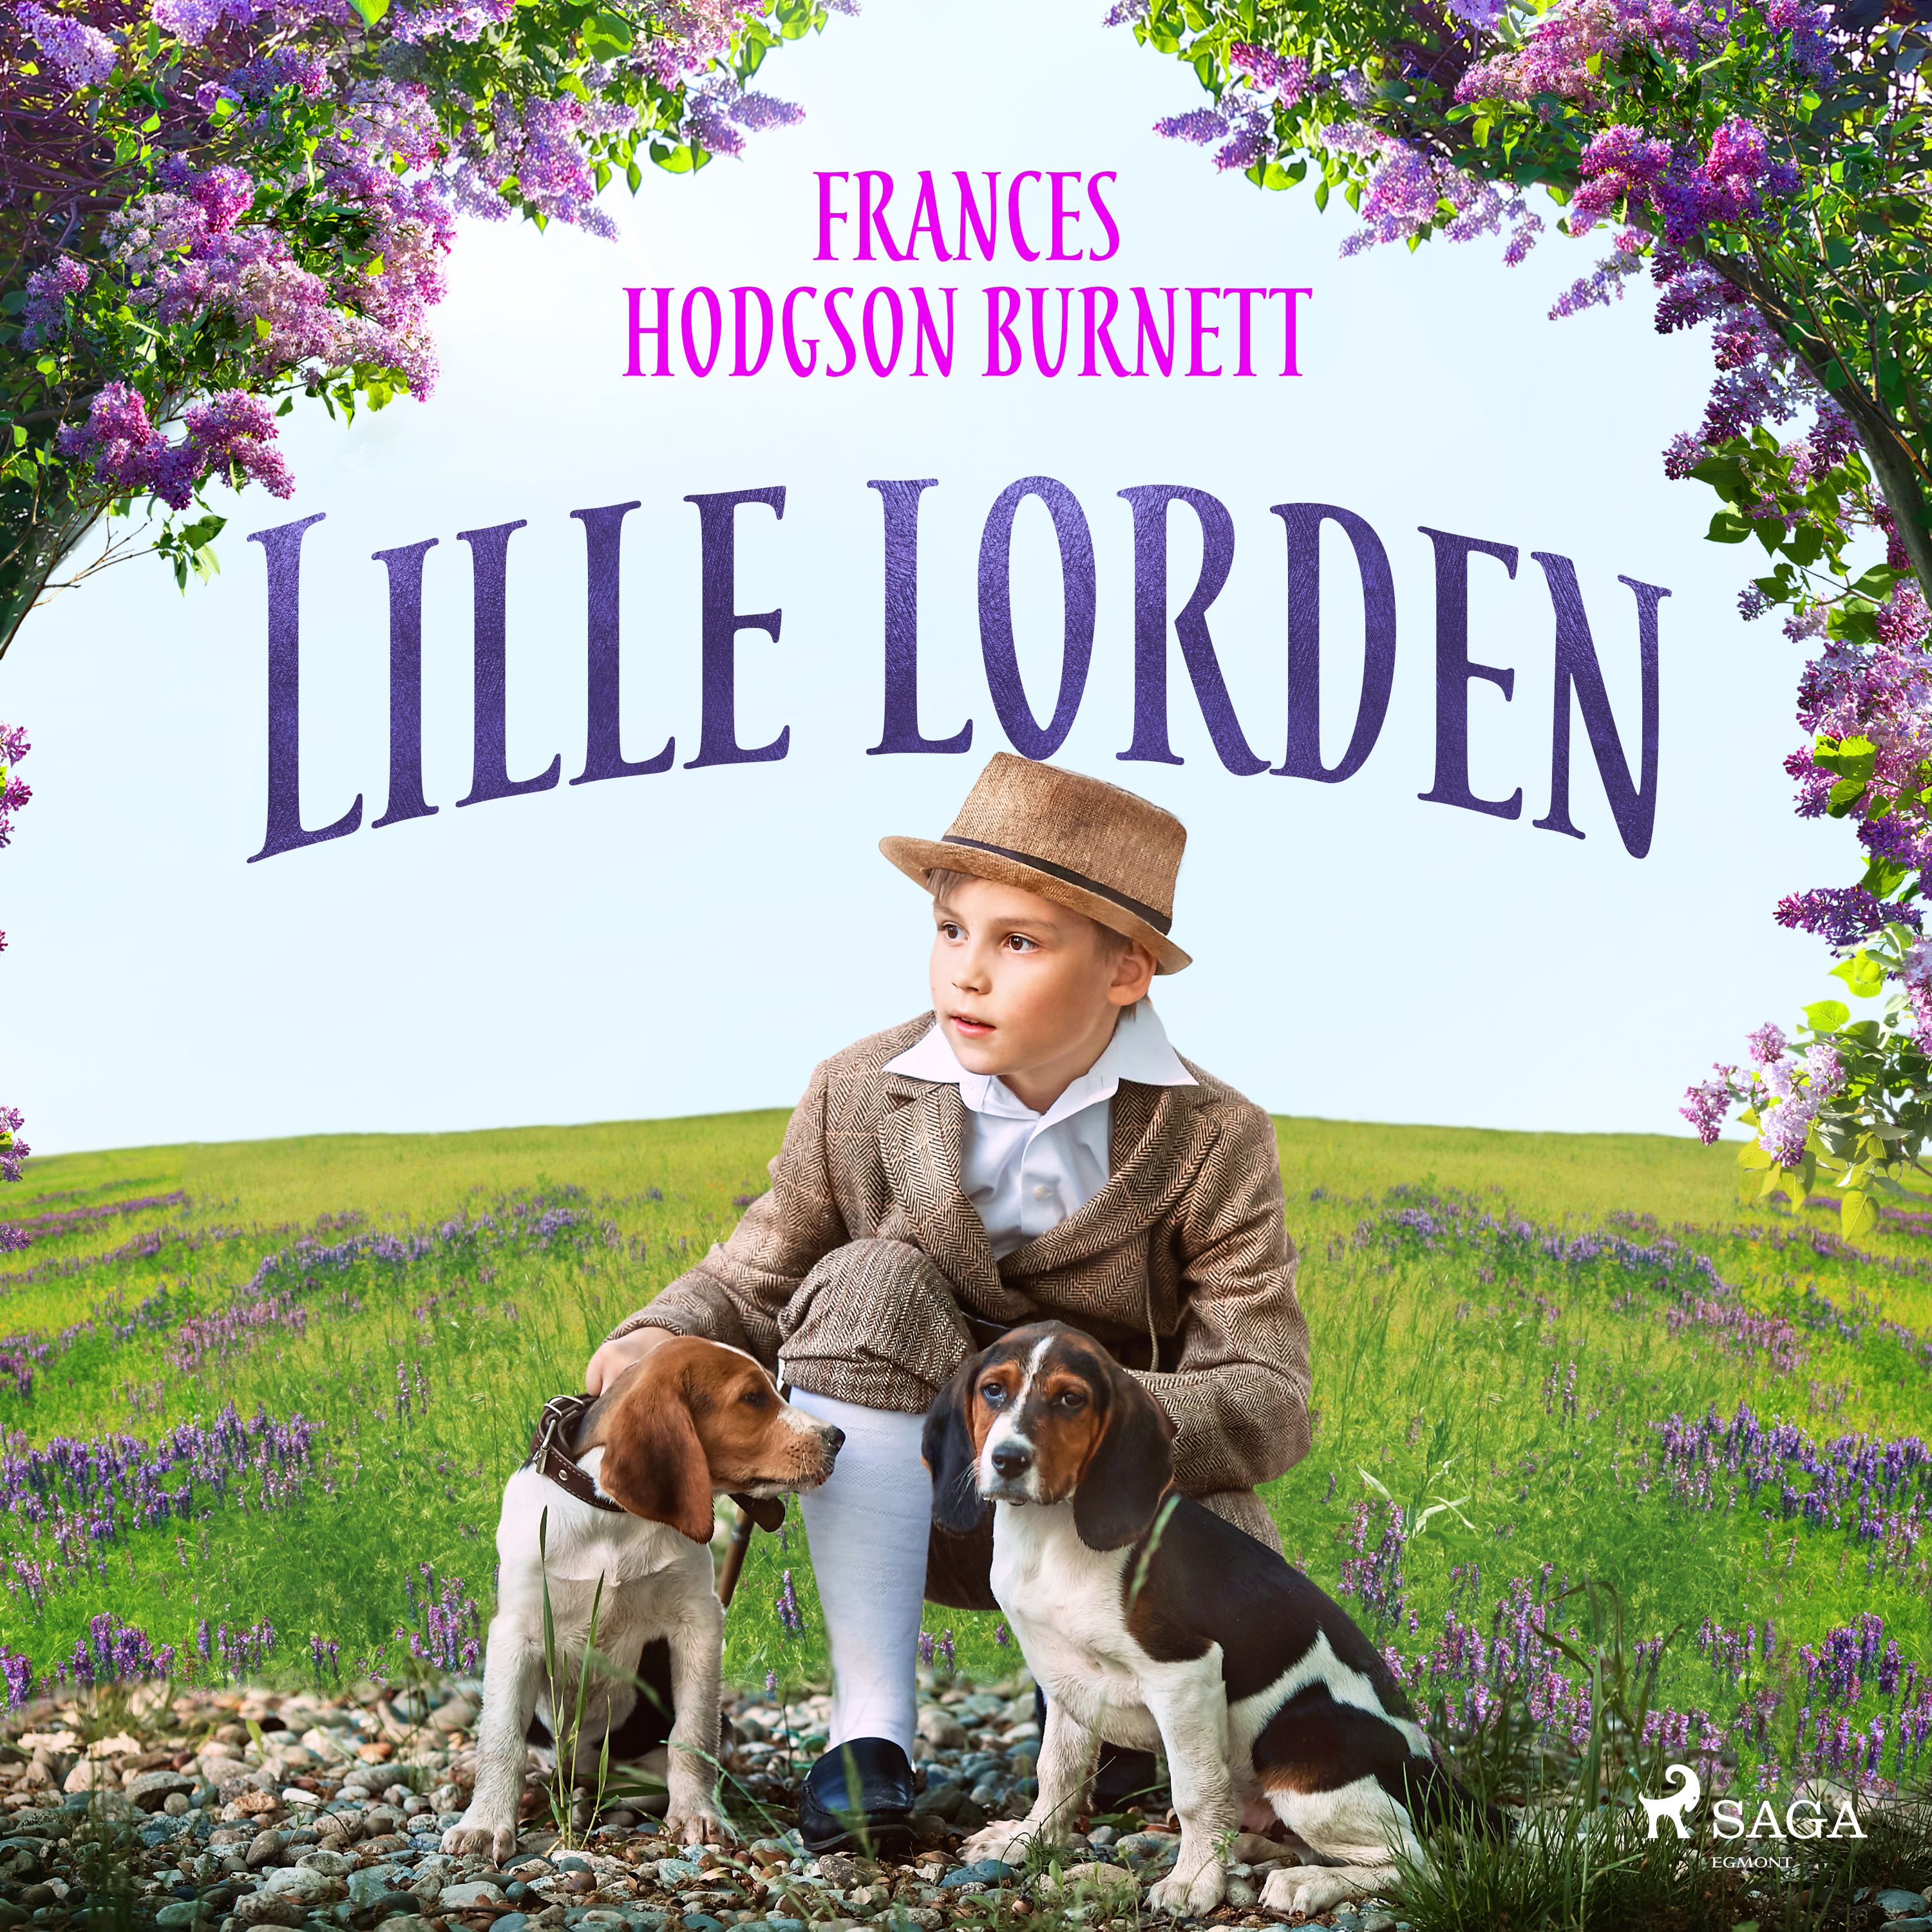 Lille lorden, audiobook by Frances Hodgson Burnett